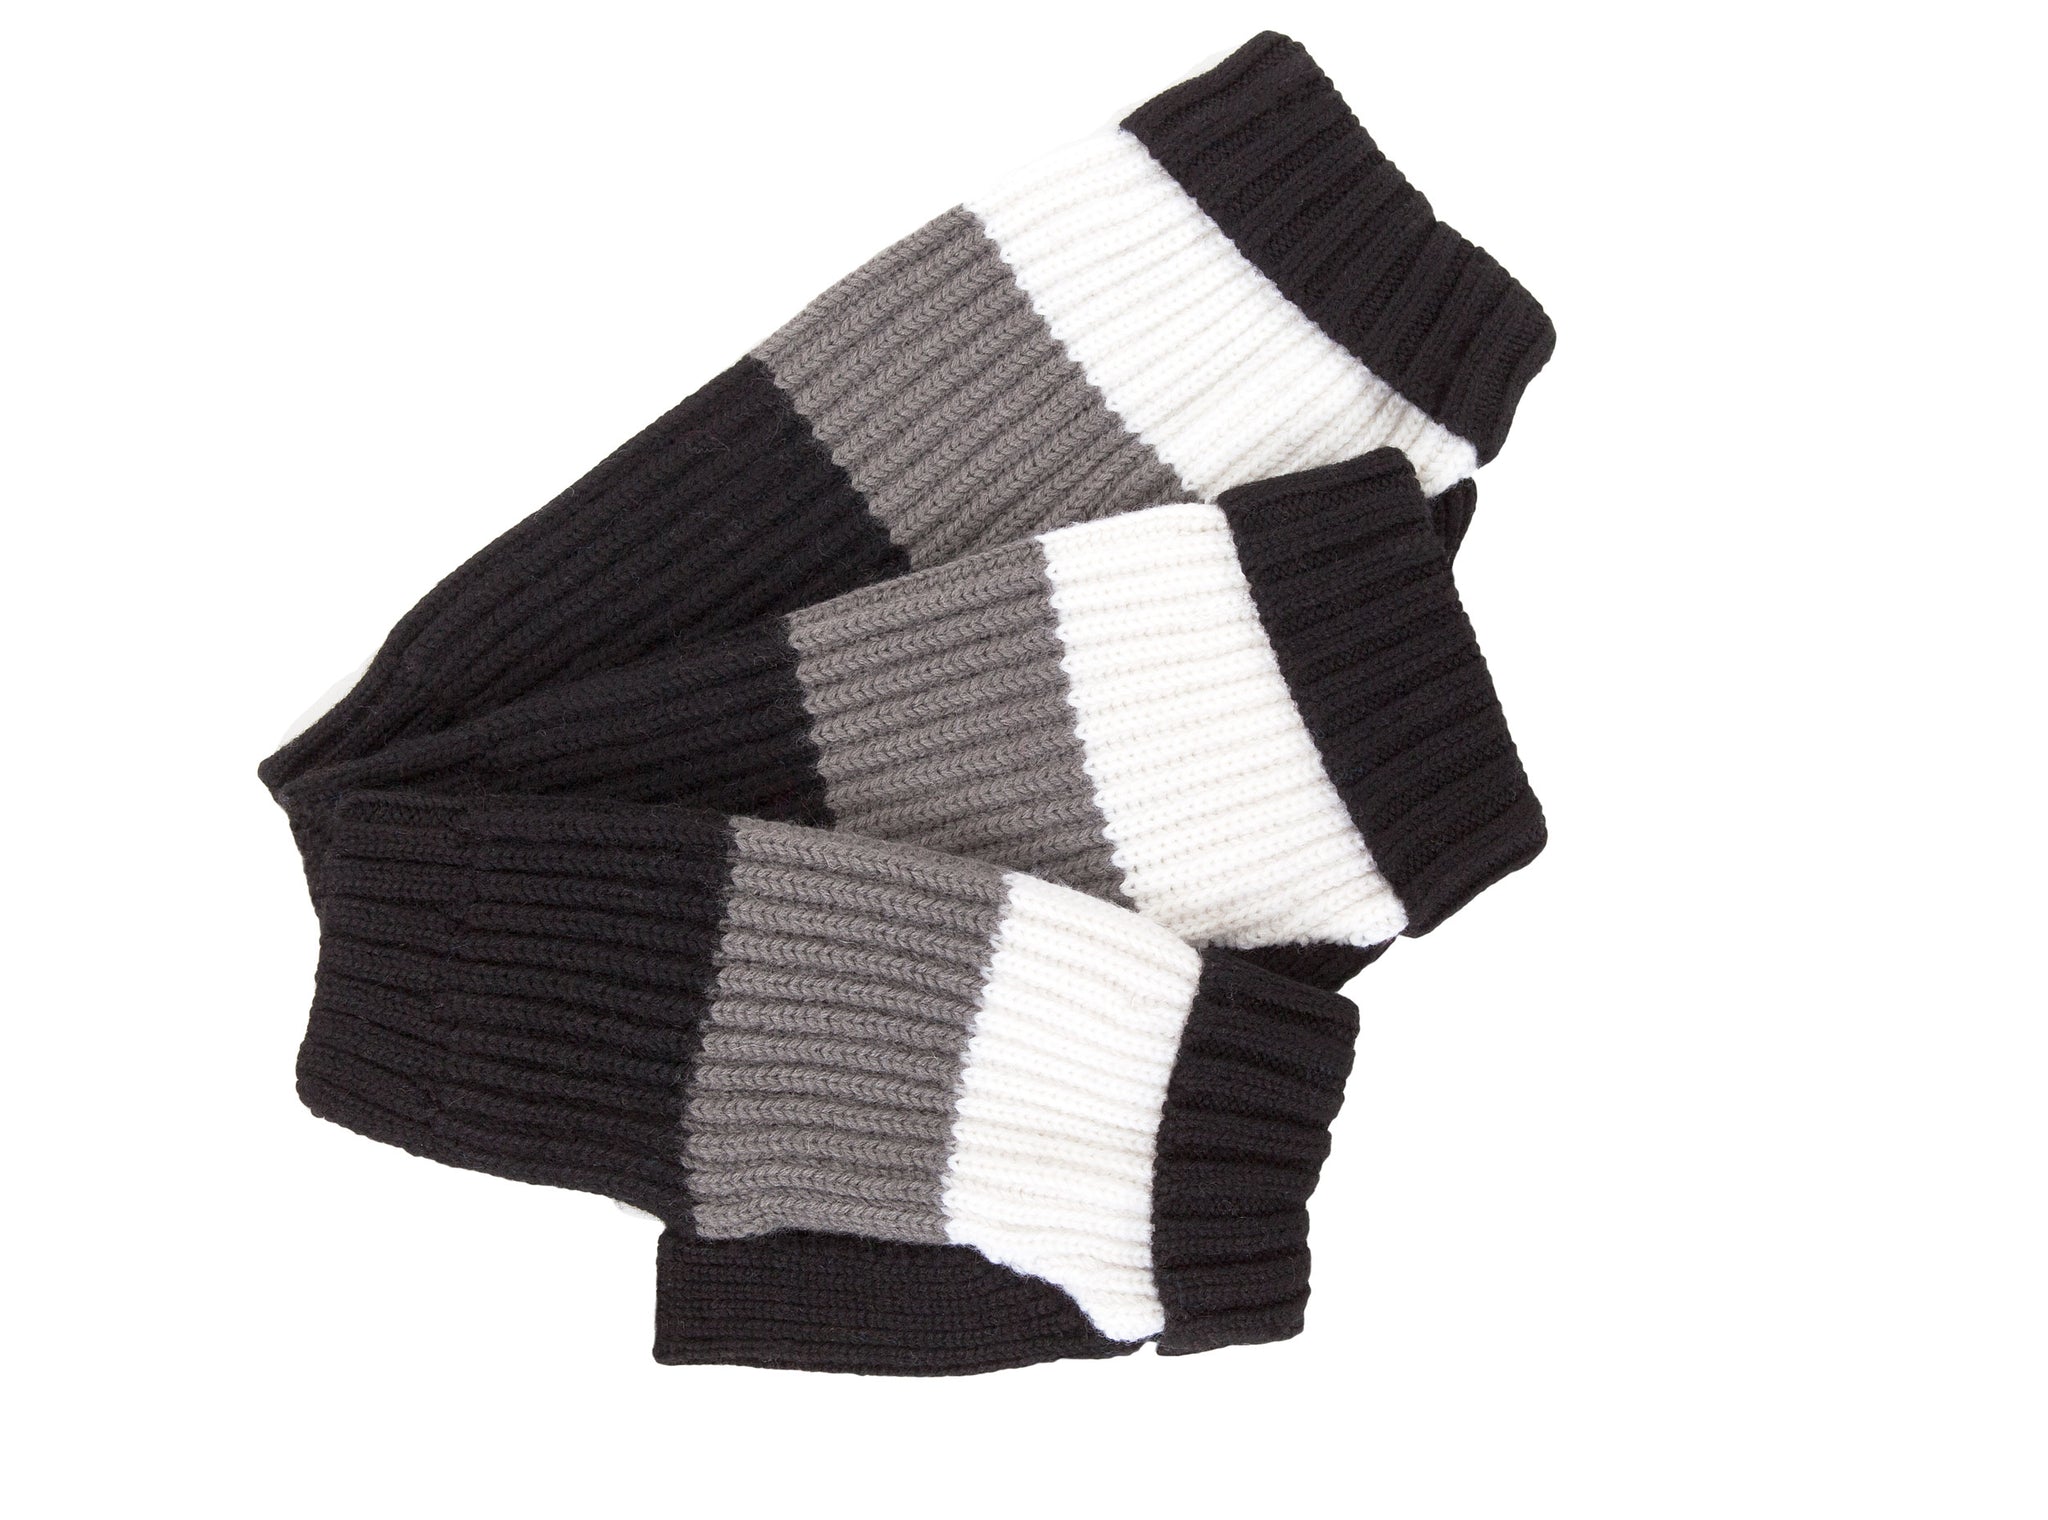 Wool - Deer Valley - Black, Grey & White Sweater